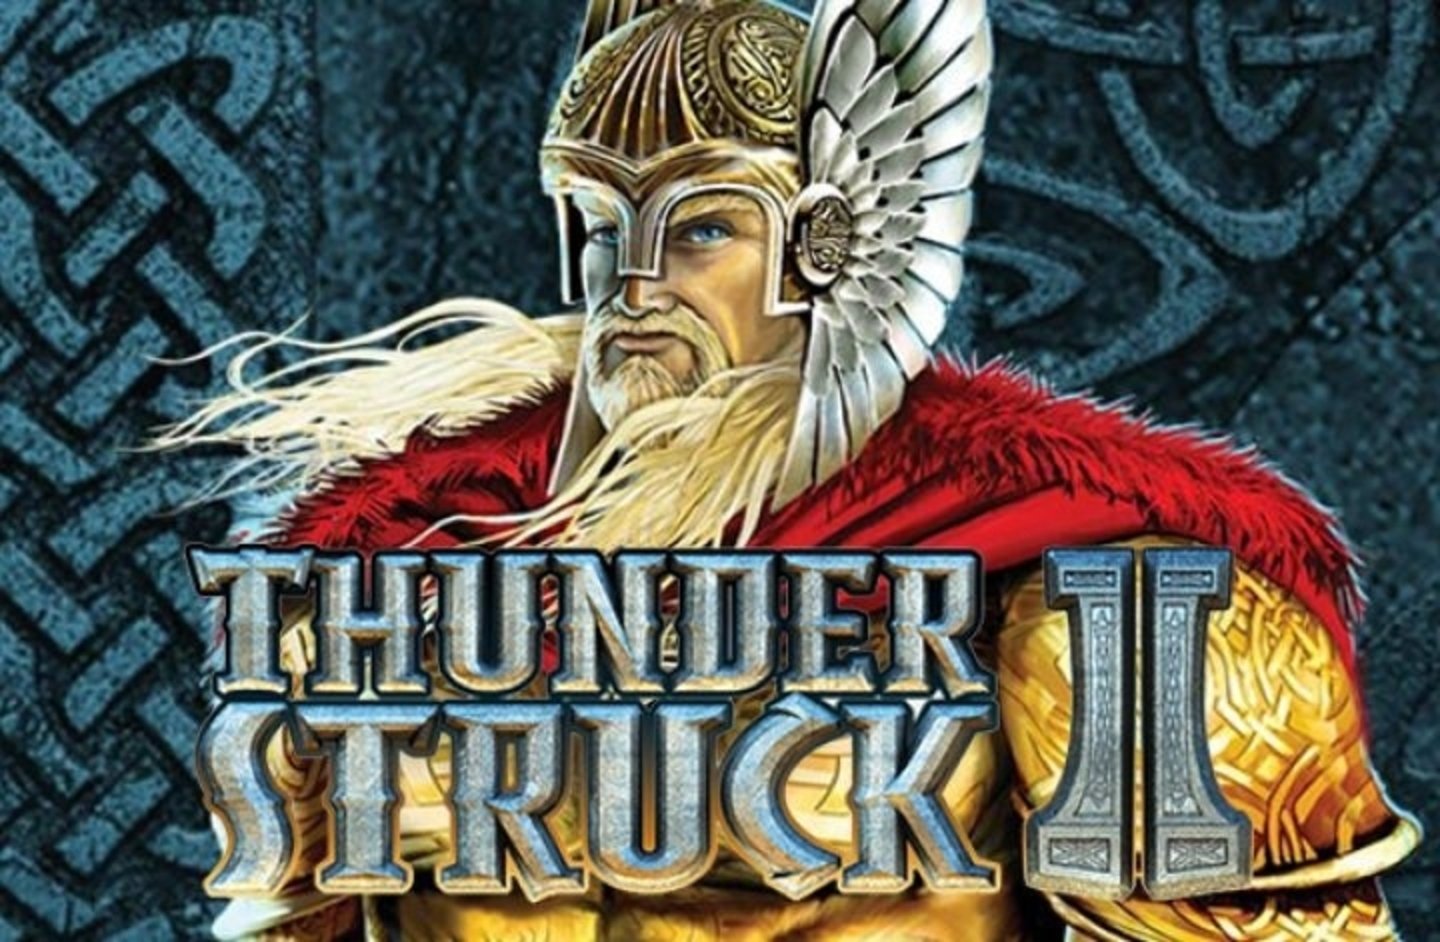 Thunderstruck2 slot